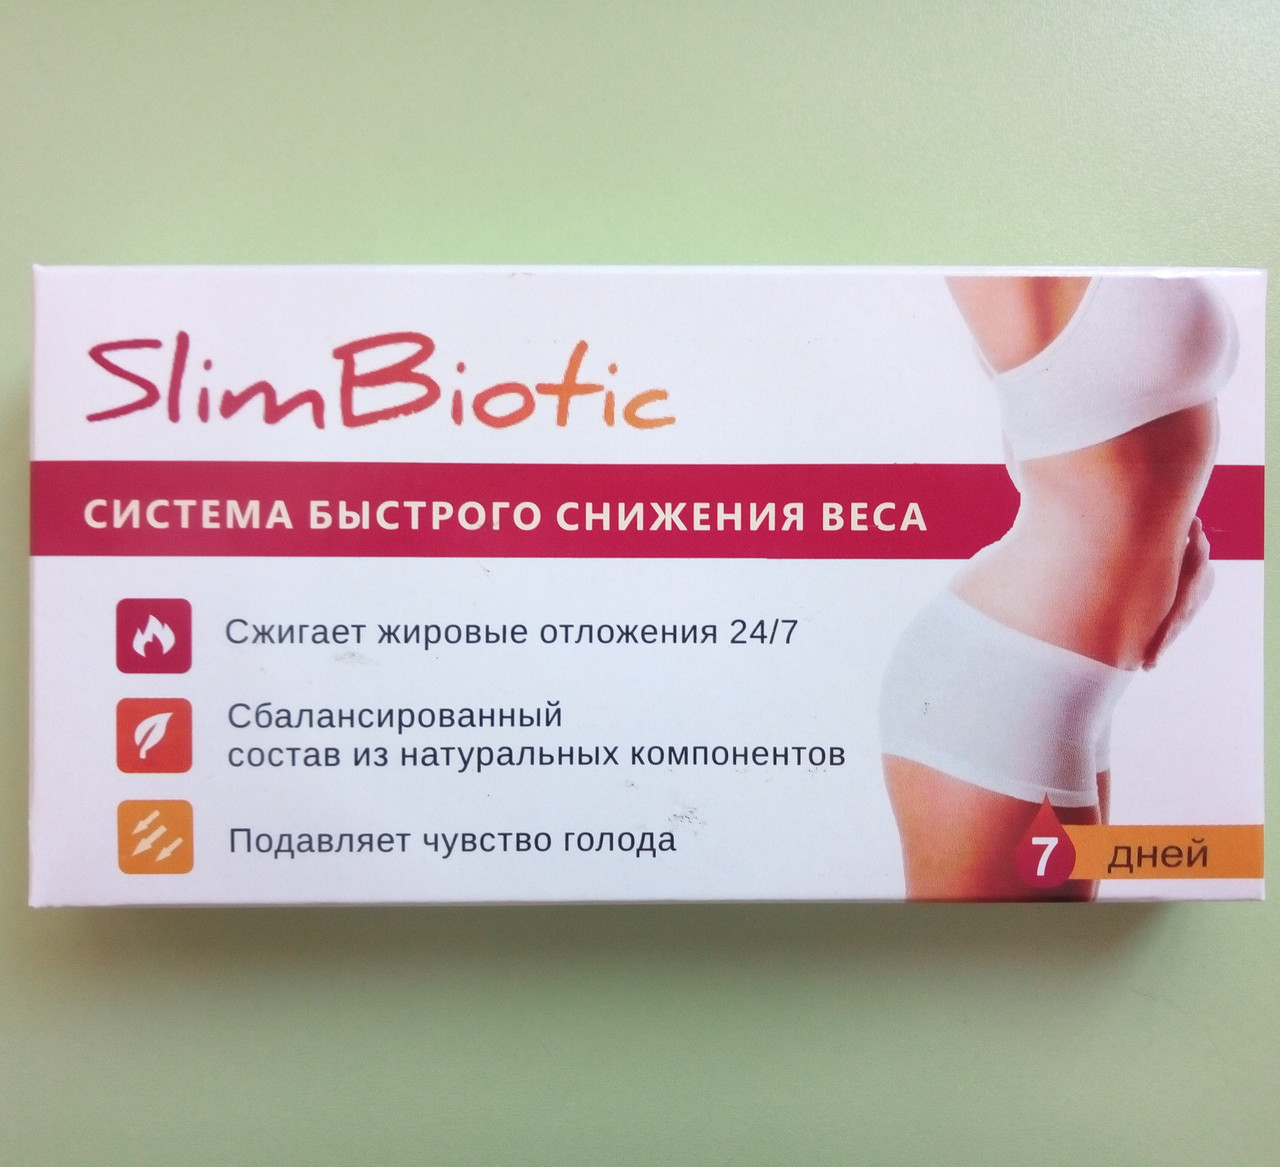 SlimBiotic — Комплекс для швидкого зниження ваги — ампули (СлімБіотик)